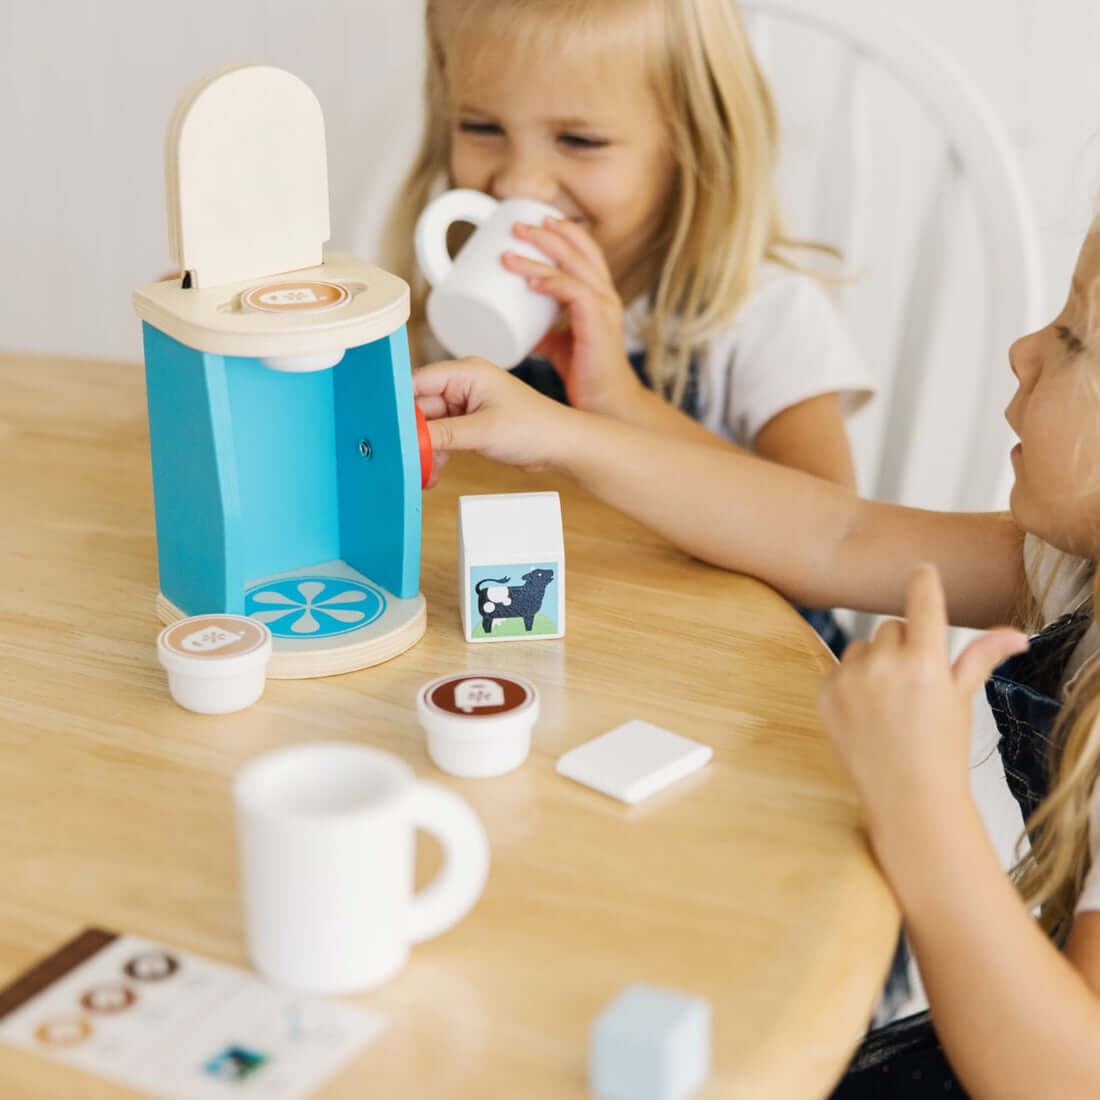 B. toys – Cafetière jouet pour enfants – Machine à café en bois